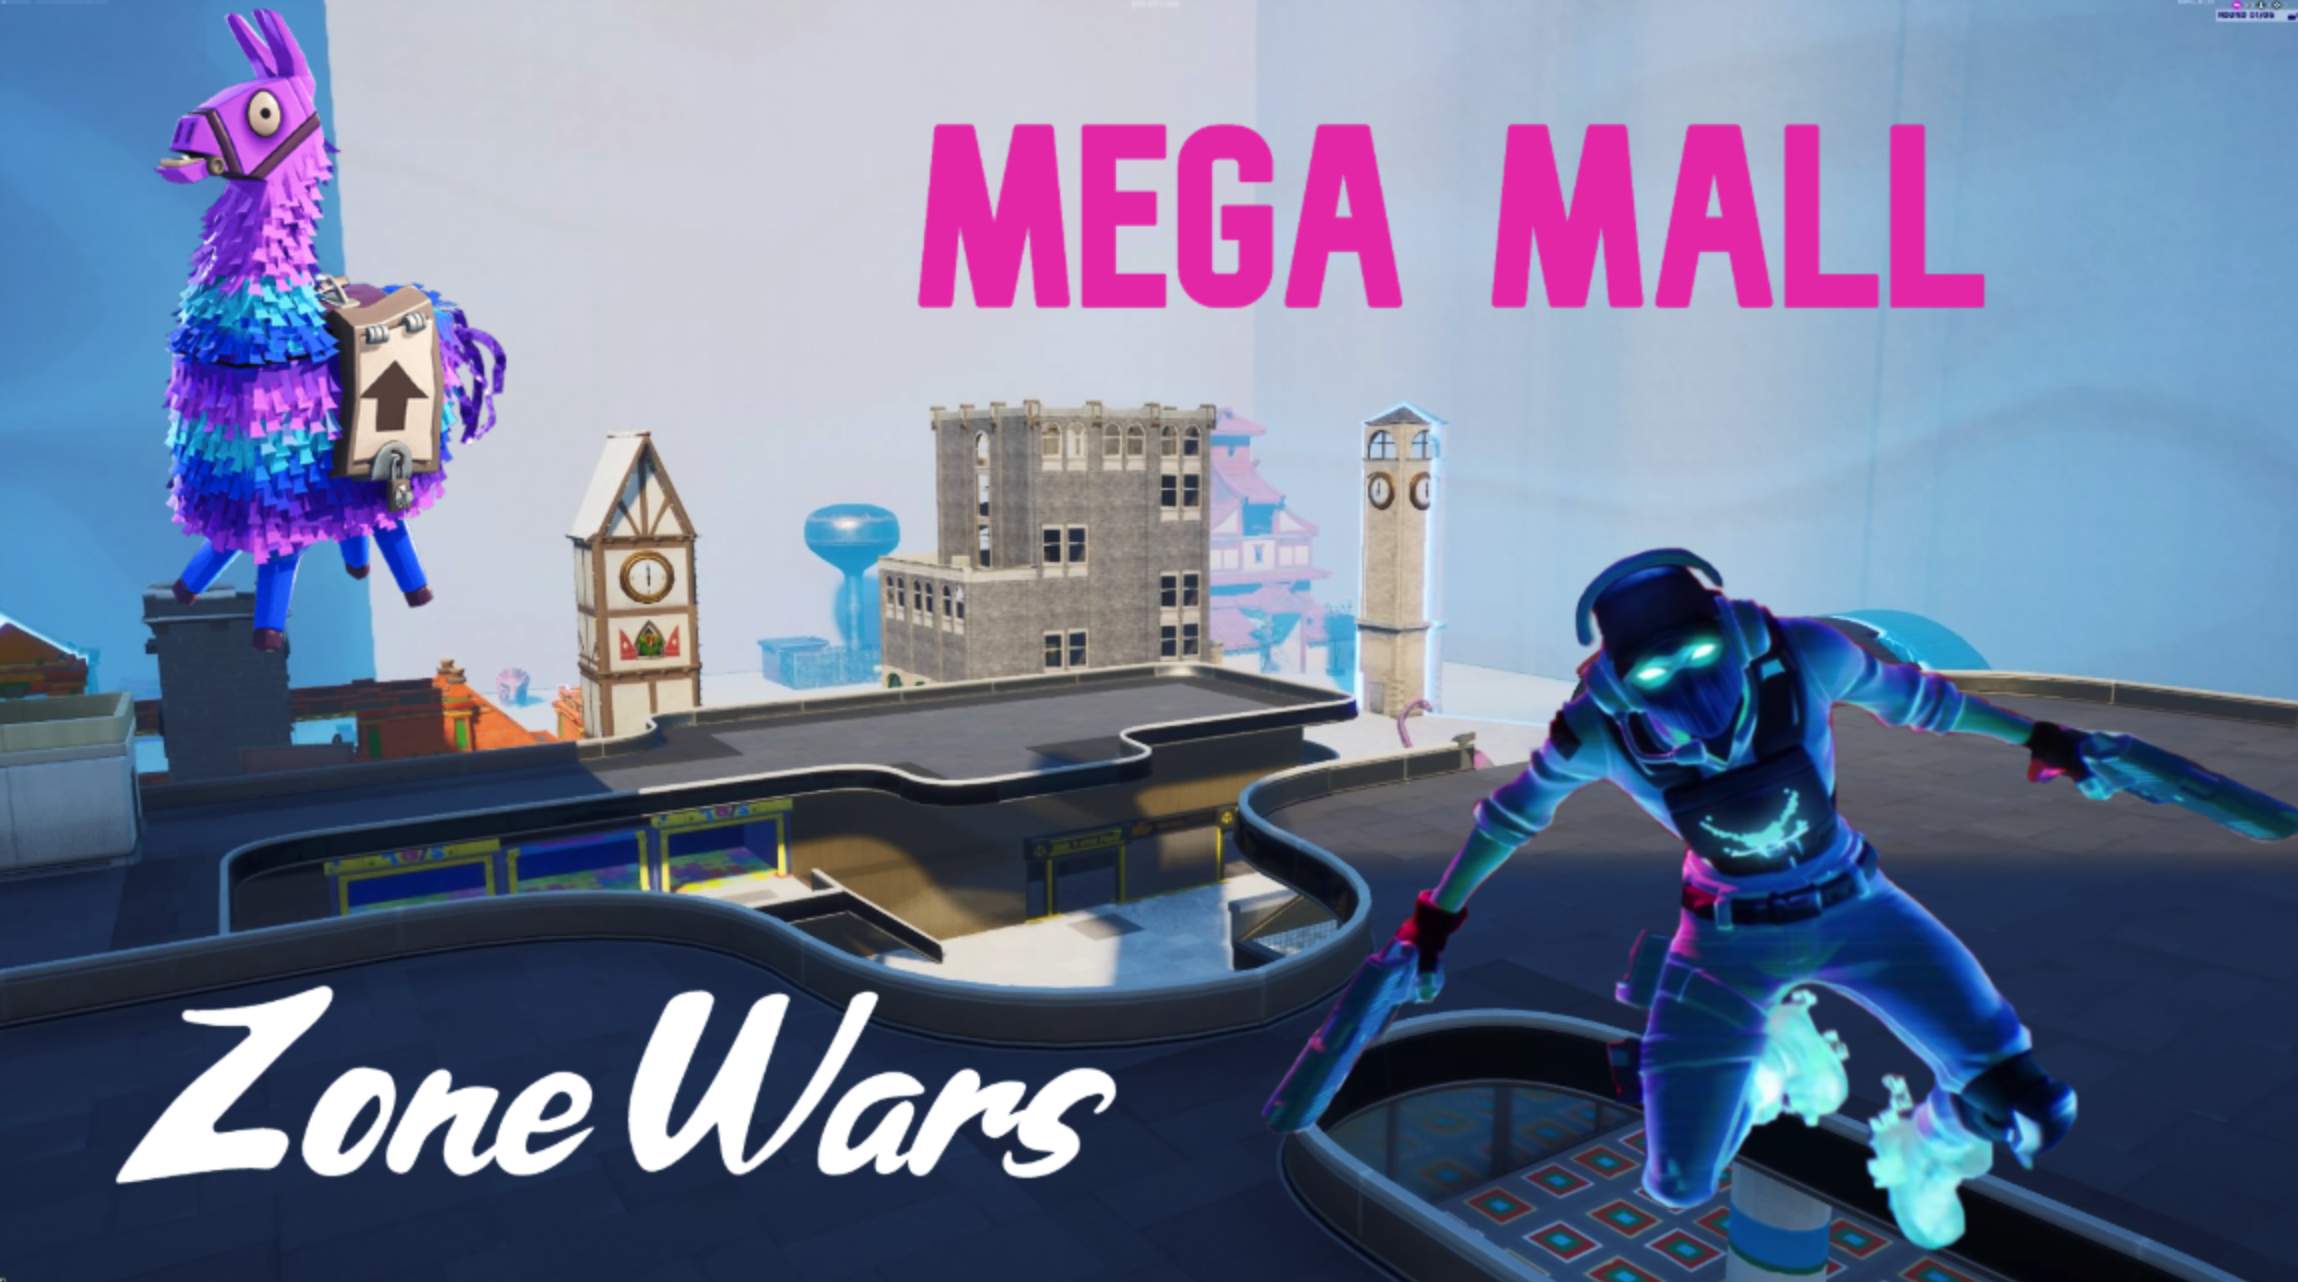 MEGA MALL: ZONE WAR